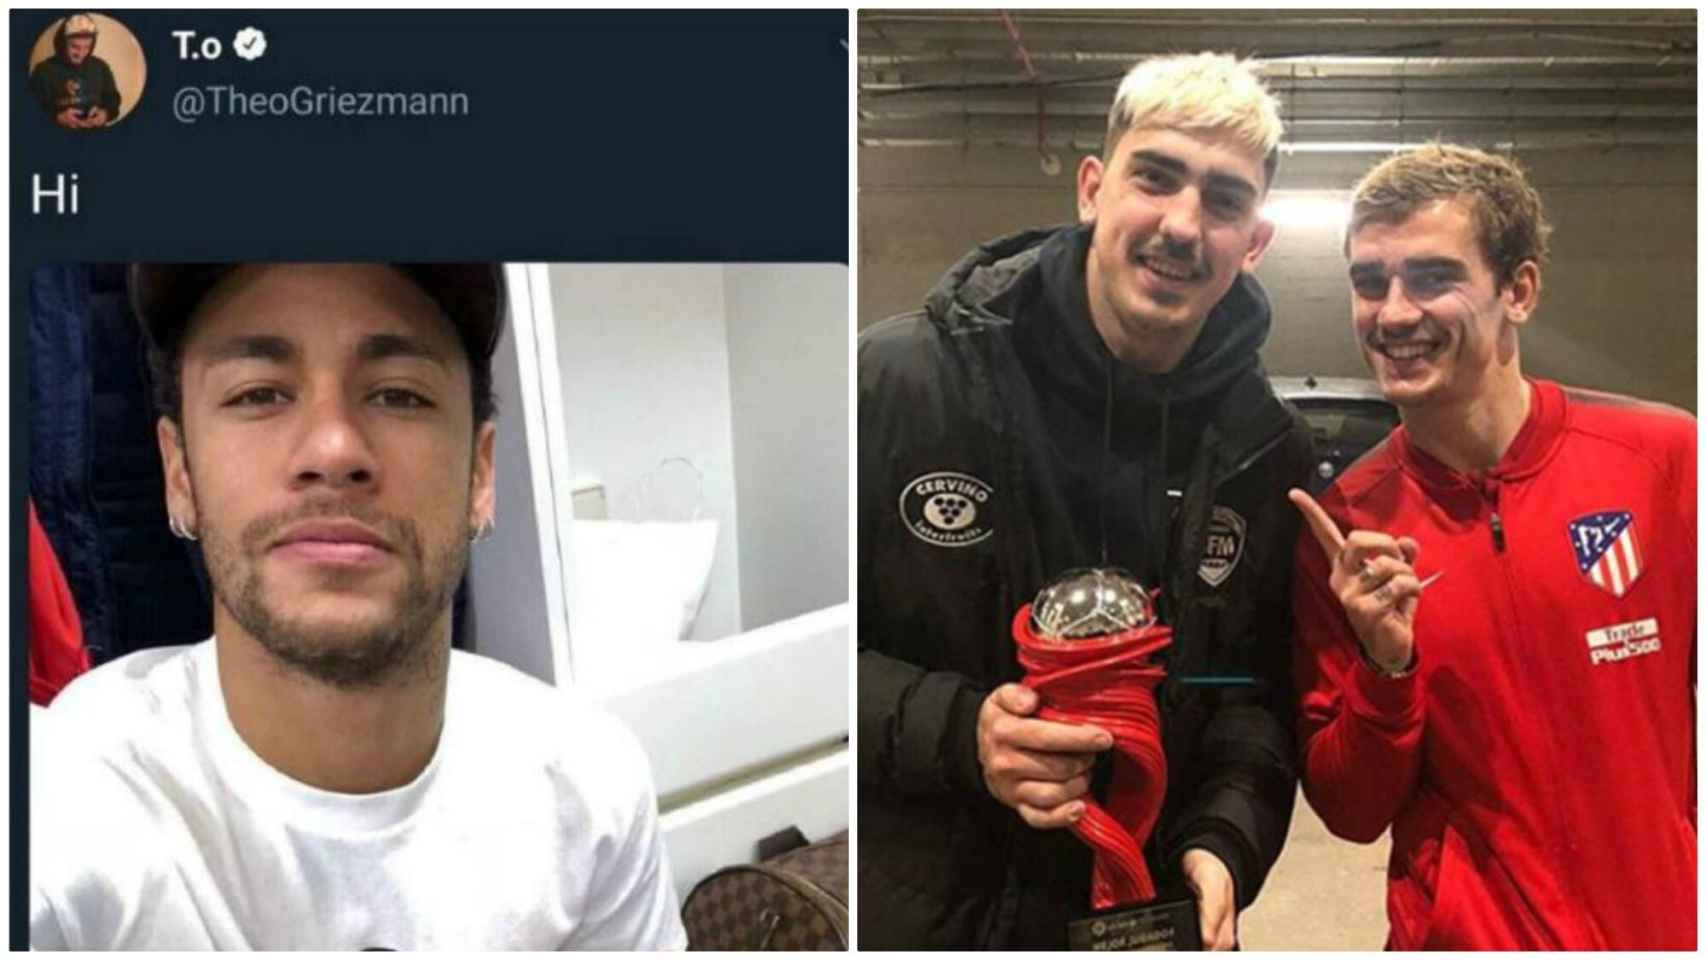 El guiño del hermano de Griezmann a Neymar